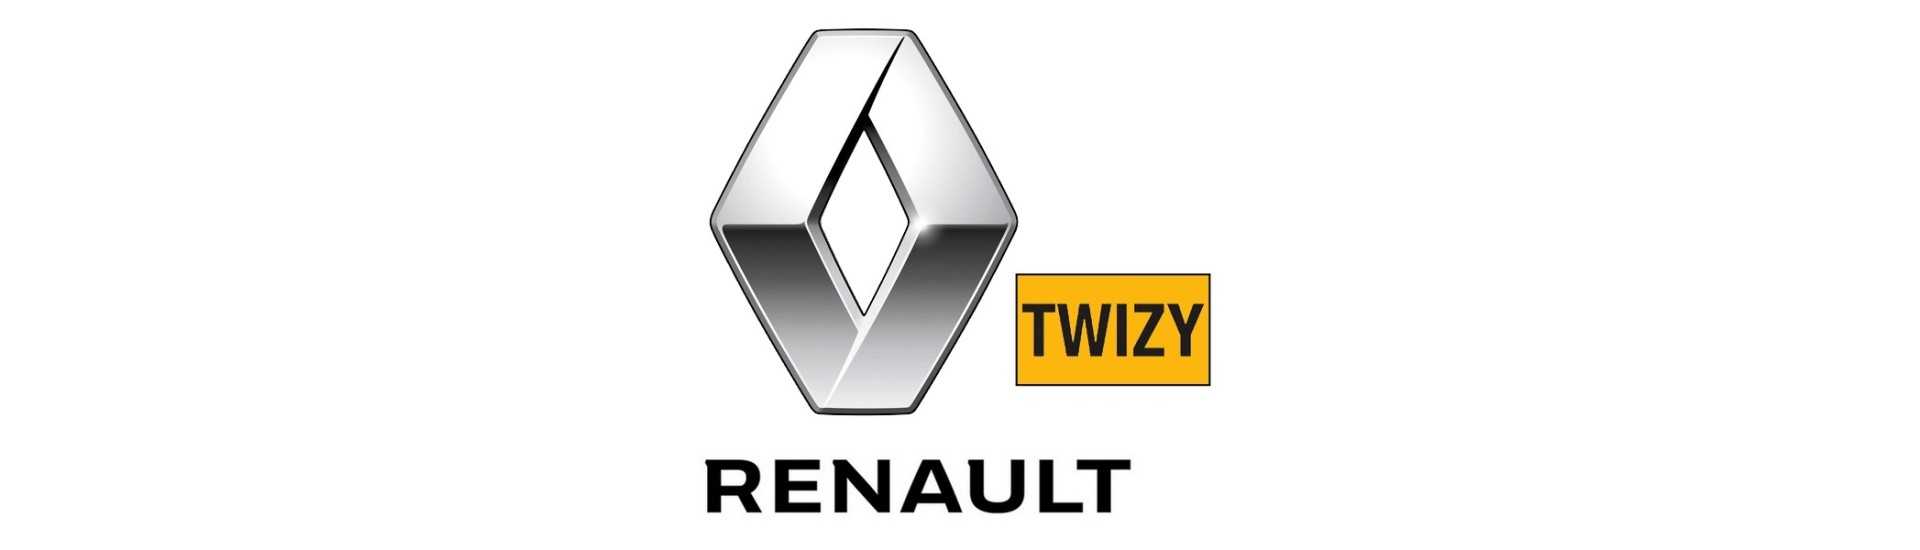 Lennot parhaalla hinnalla ilman lupaa Renault Twizy